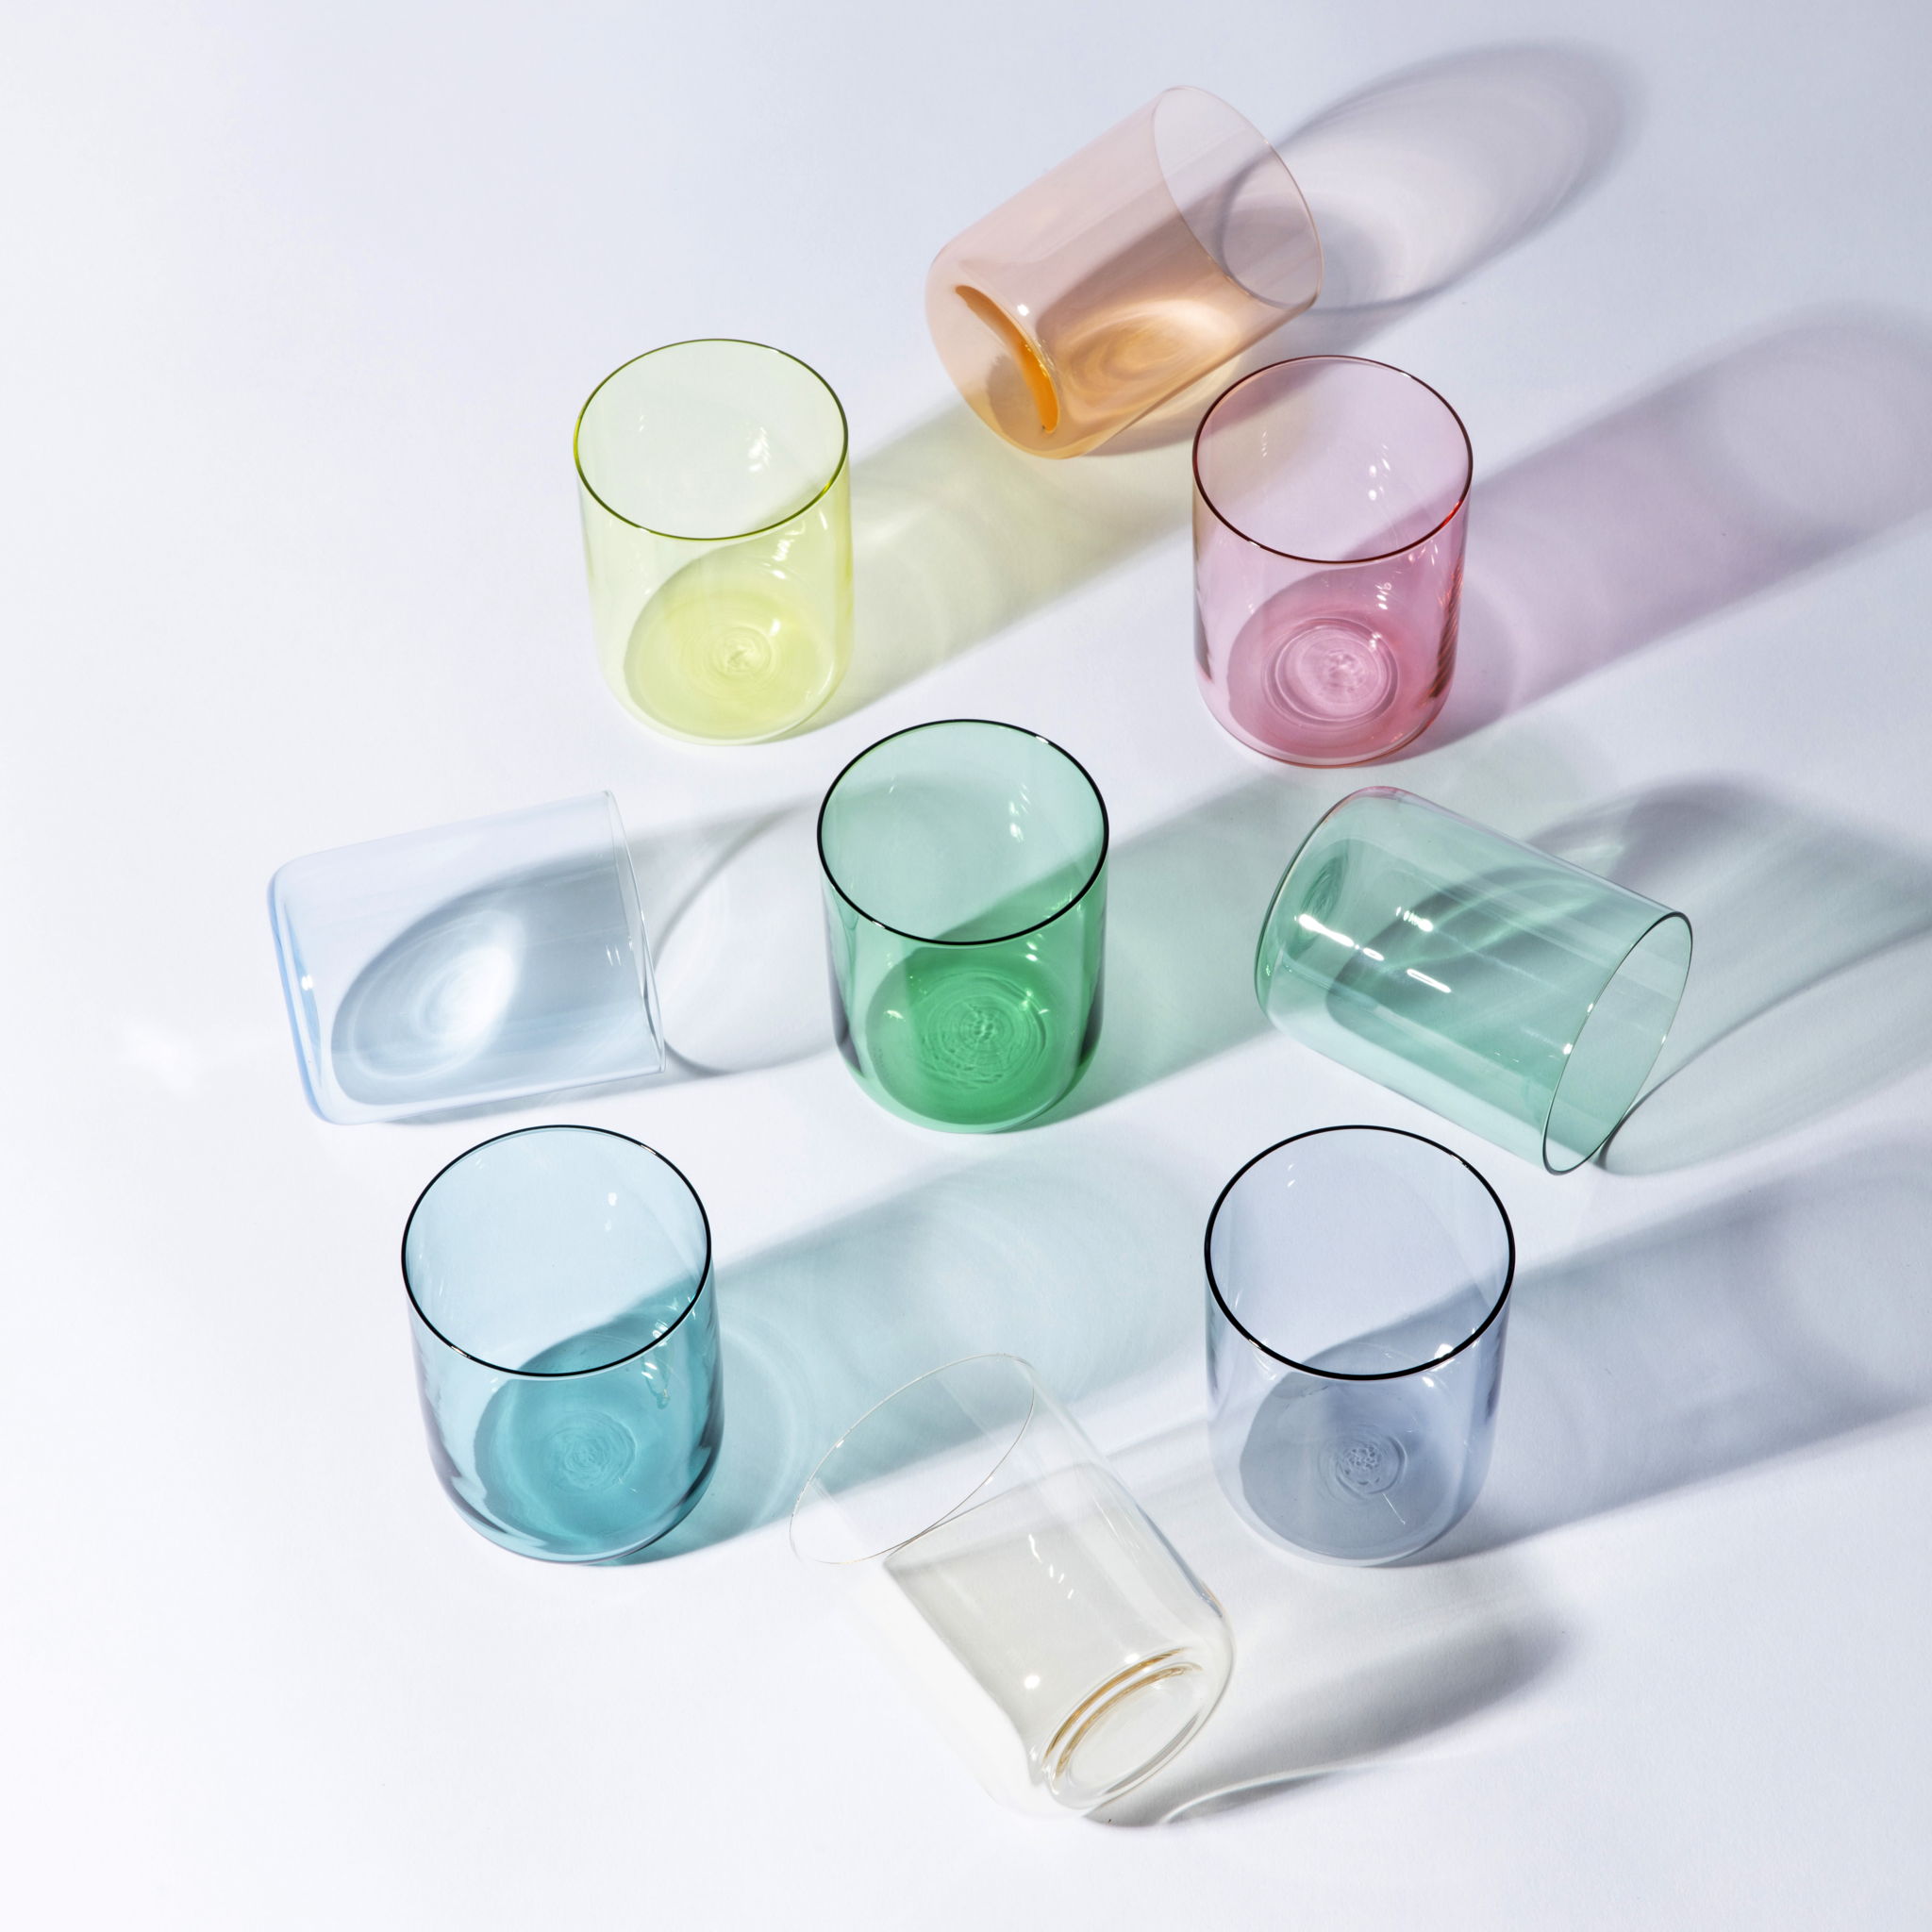 Saison des verres ‘multicolour’ est une collection de verres, déclinée en quatre sets, pour autant de saisons, de neuf verres, en trois coloris ludiques.